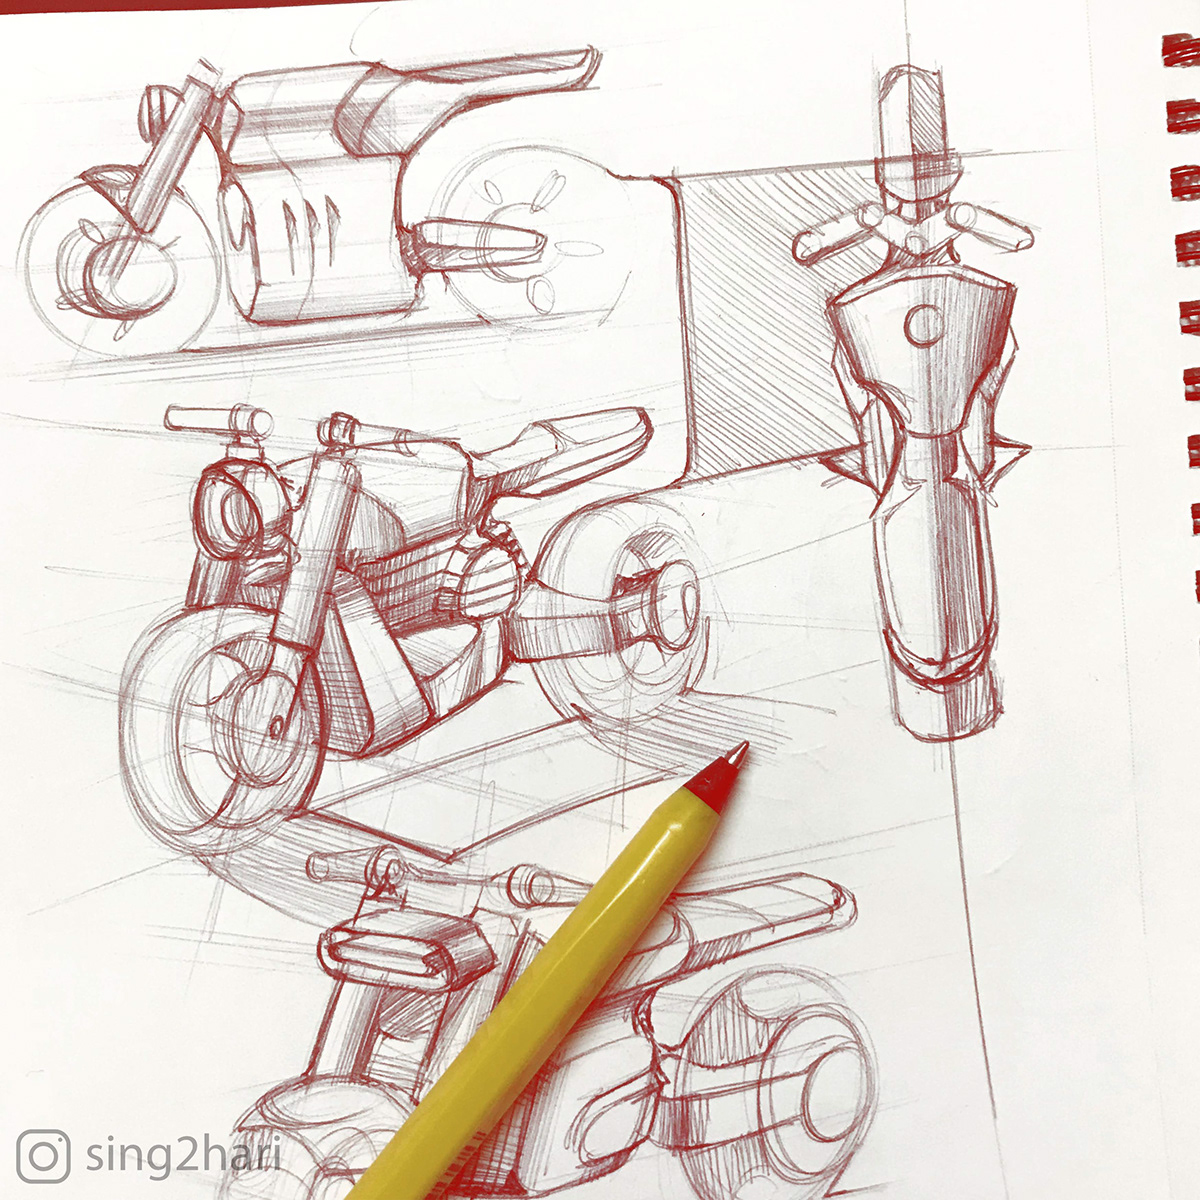 inktober inktober2018 industrialdesign bikesketch bikedesign MotorcycleDesign motorcyclesketch motosketch instasketch automotivedesign